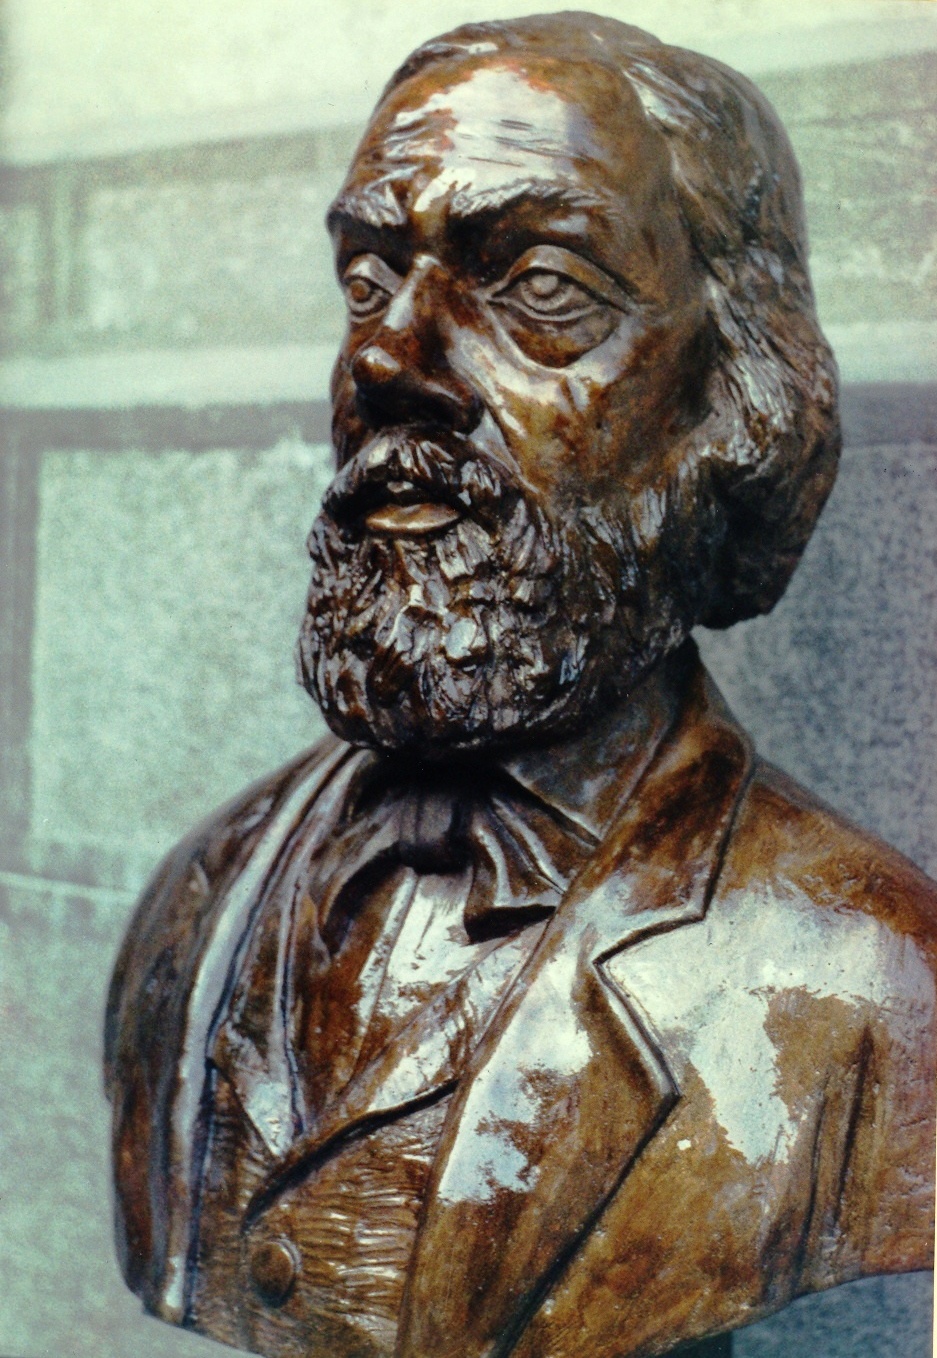 Ioan LADEA, sculptor